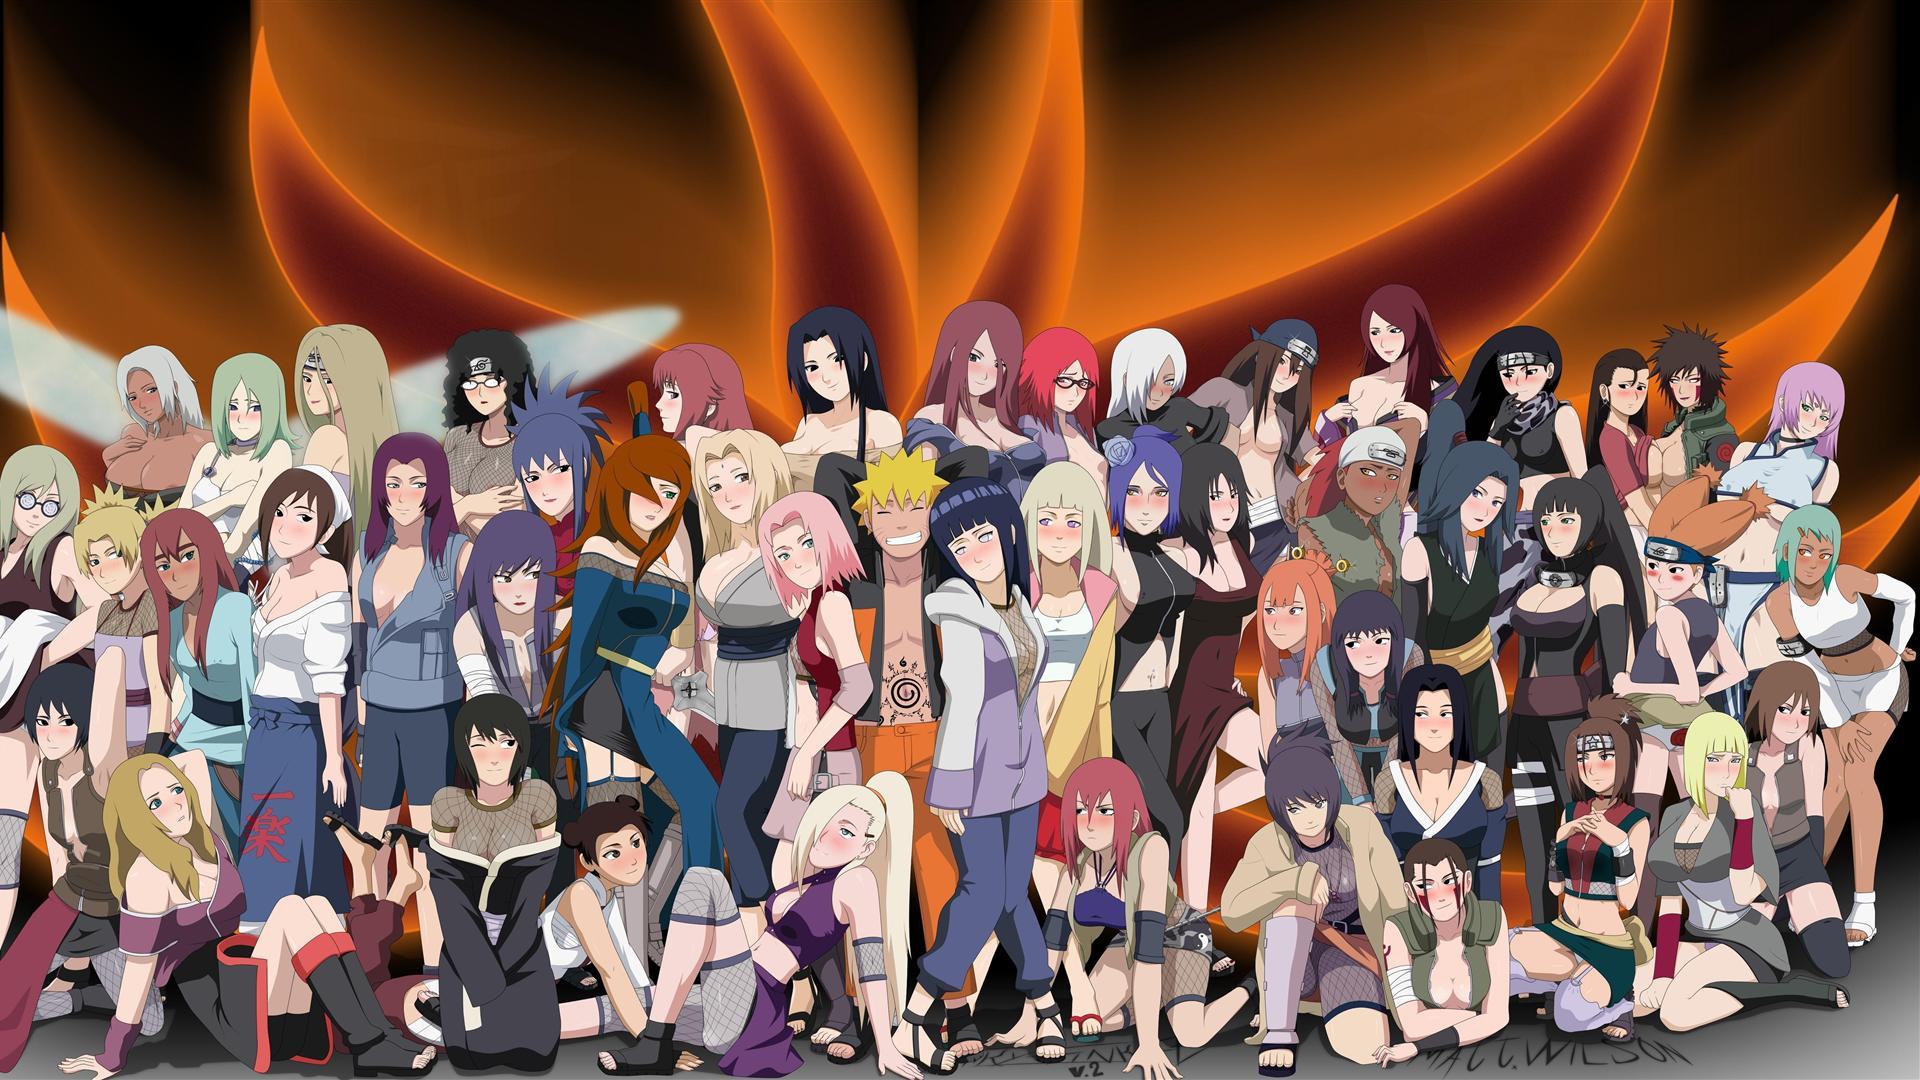 80+ Gambar Naruto Full Hd Kekinian